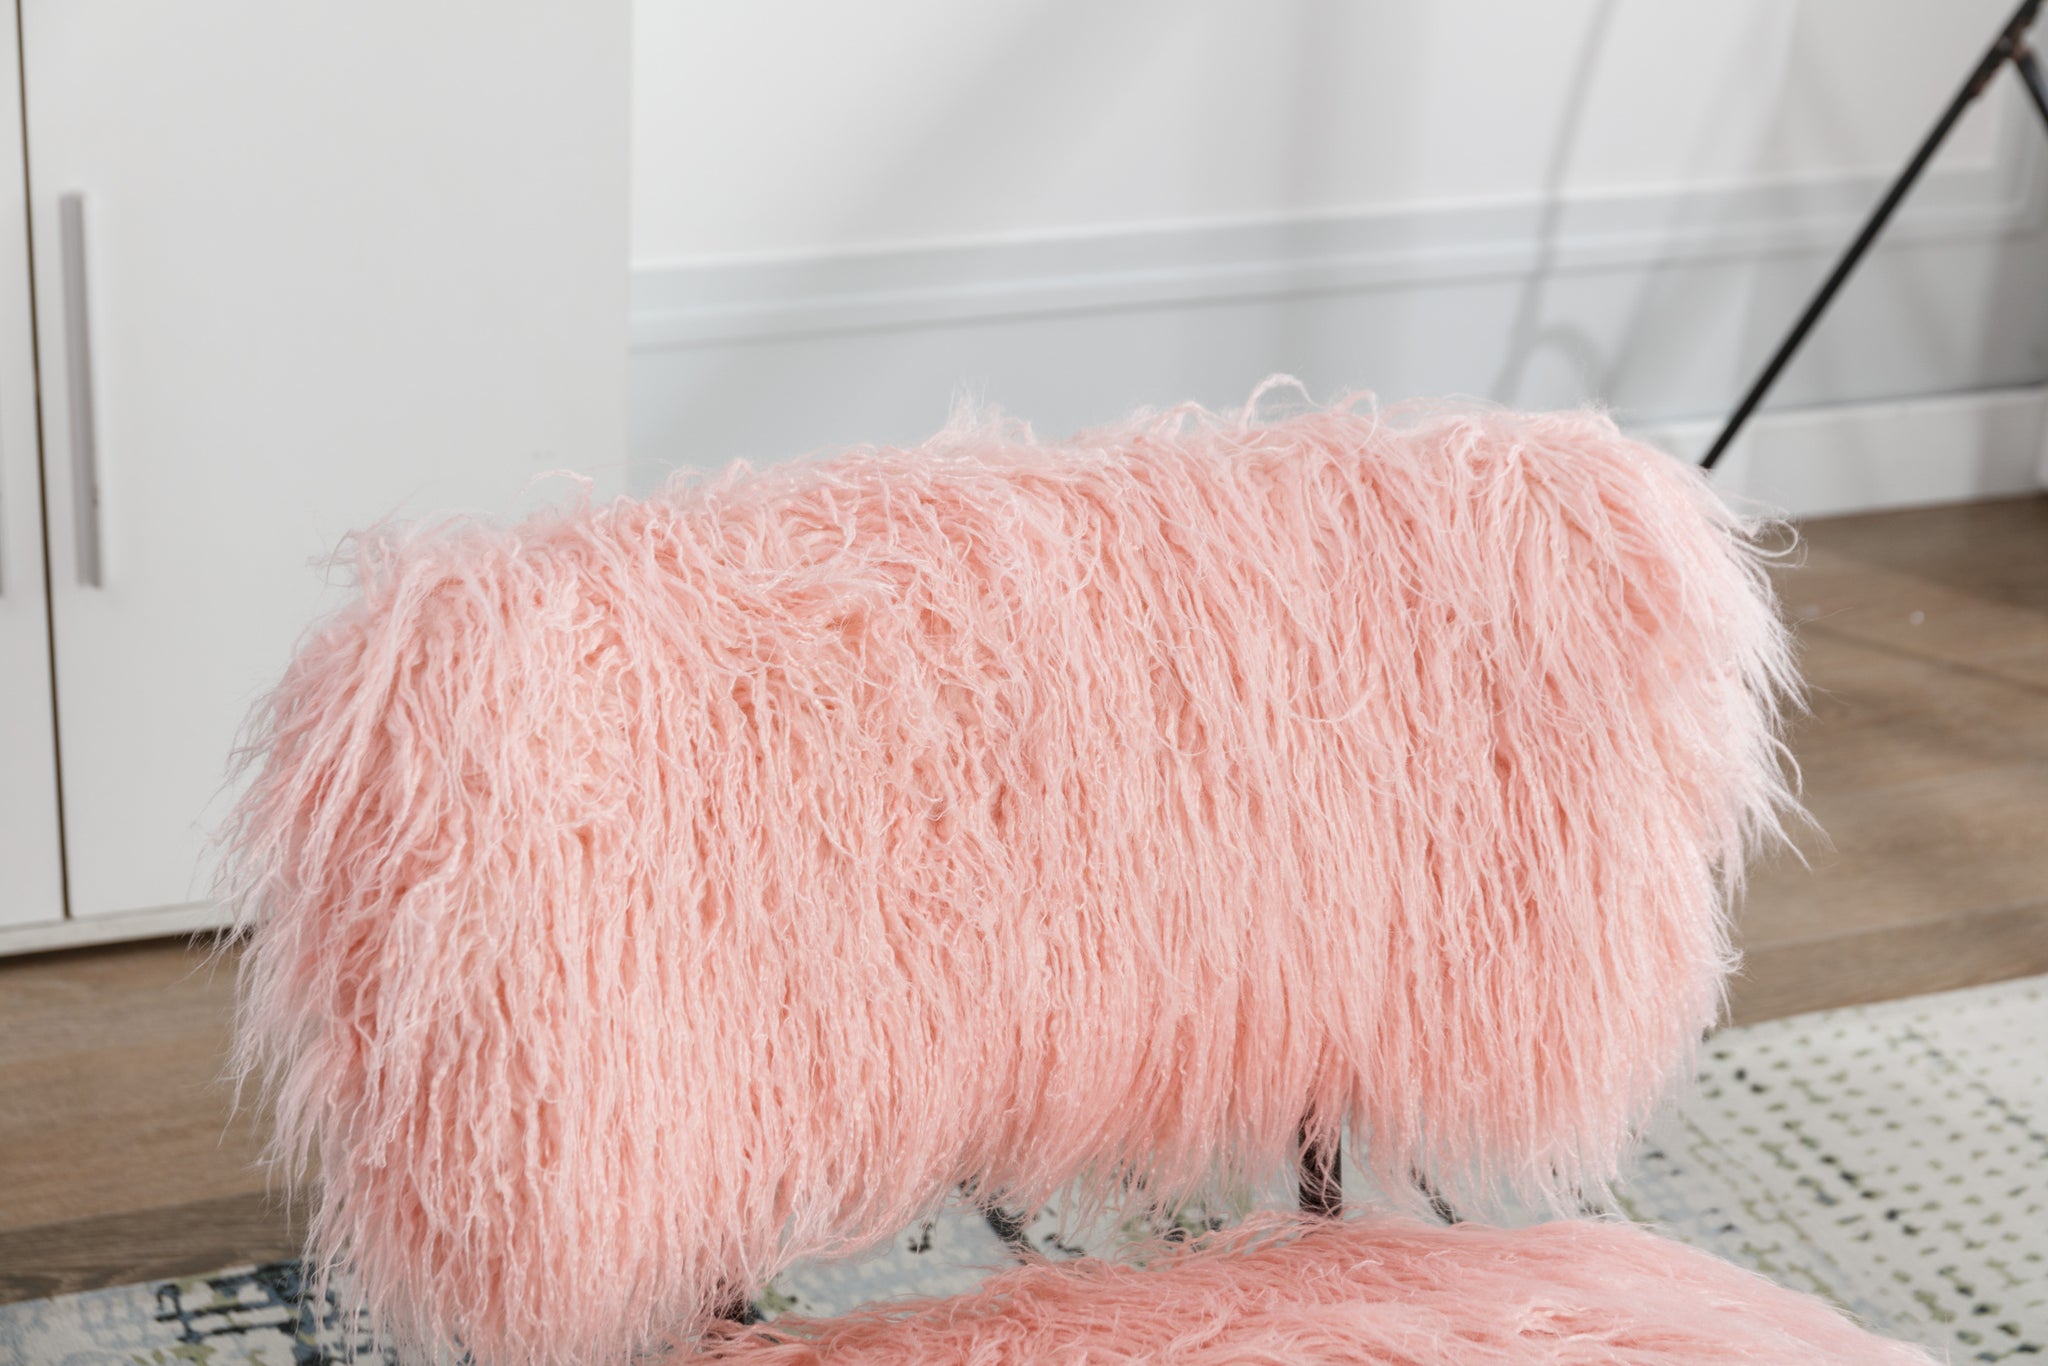 25.2'' Wide Faux Fur Plush Nursery Rocking Chair, Baby pink-foam-faux fur